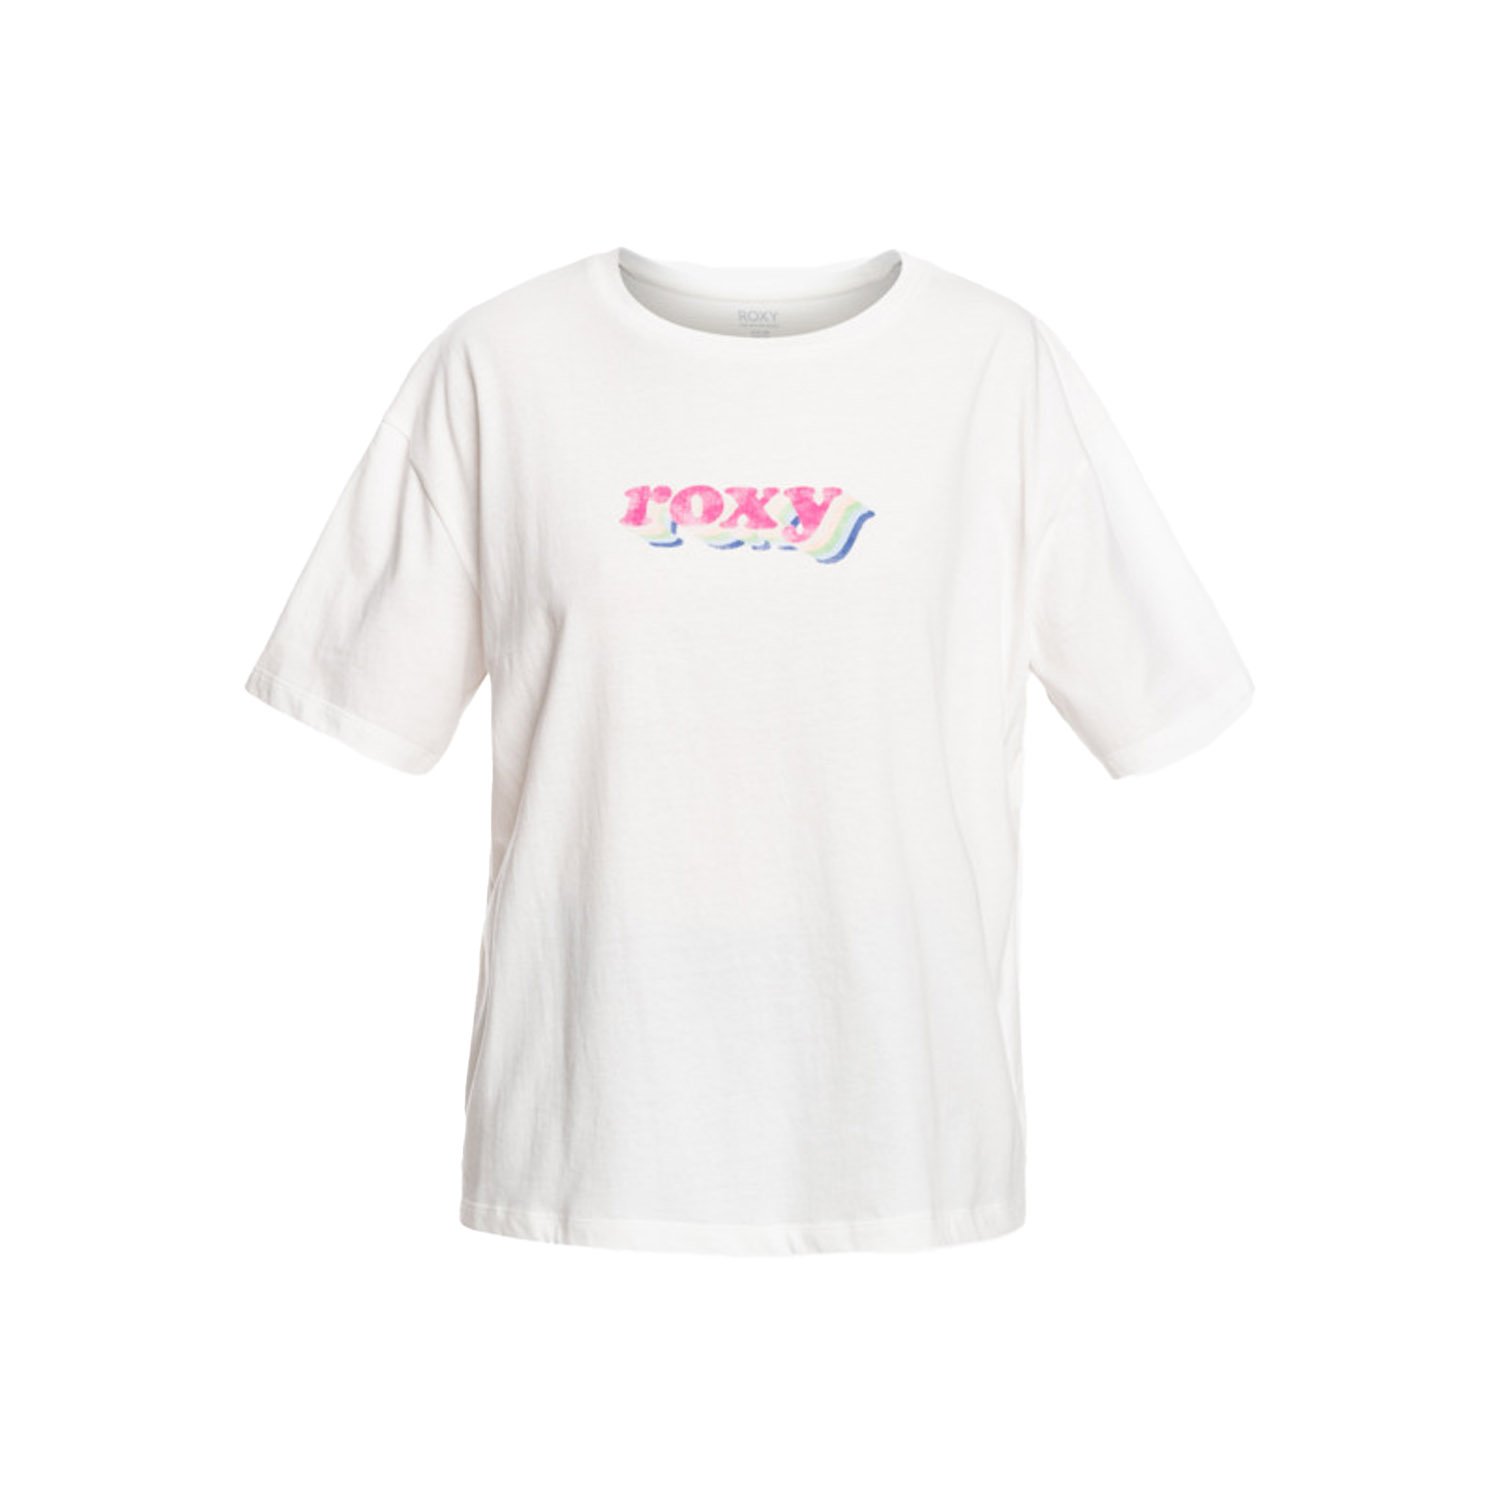 Roxy Sand Under The Sky Kadın Tişört - Beyaz - 1